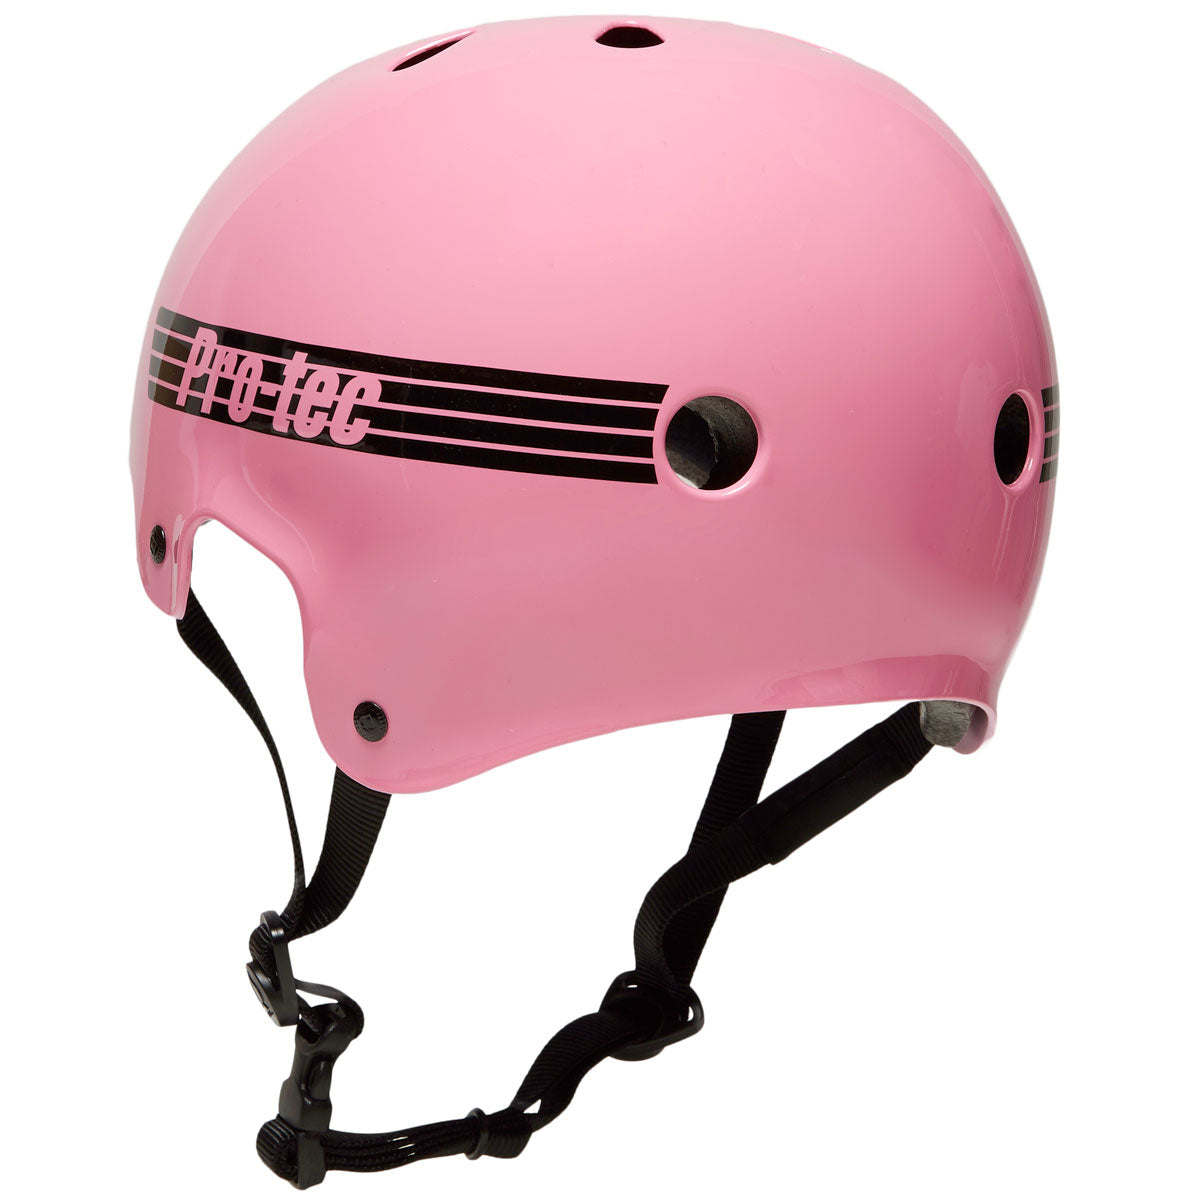 Pro-Tec Old School Certified Helmet - Gloss Pink image 2